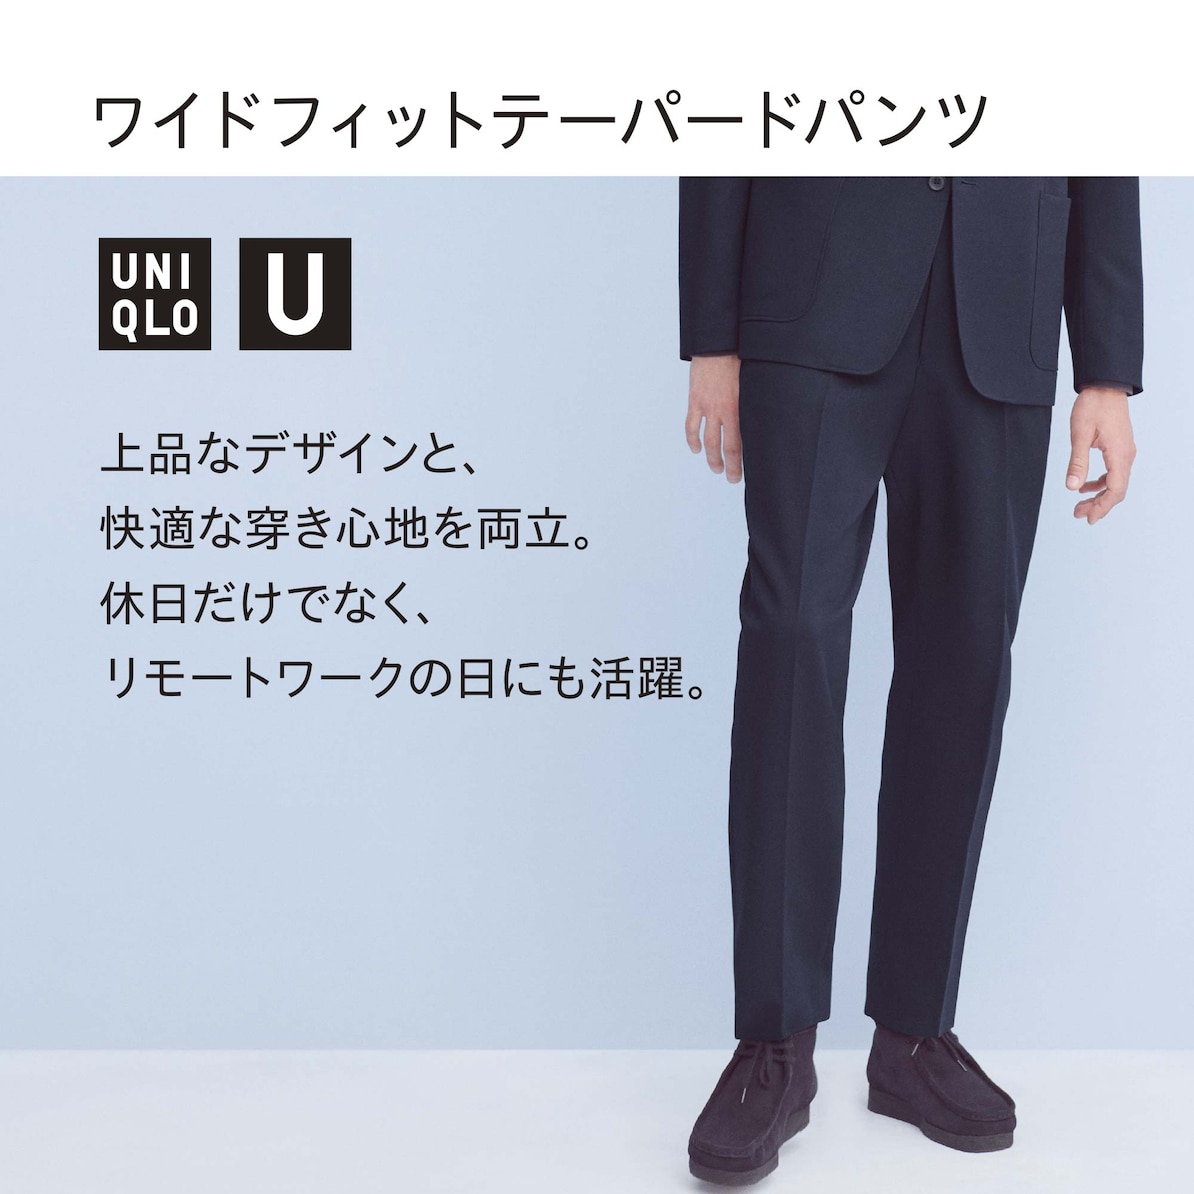 UNIQLO U(ユニクロユー) ワイドフィットテーパードパンツの商品画像11 